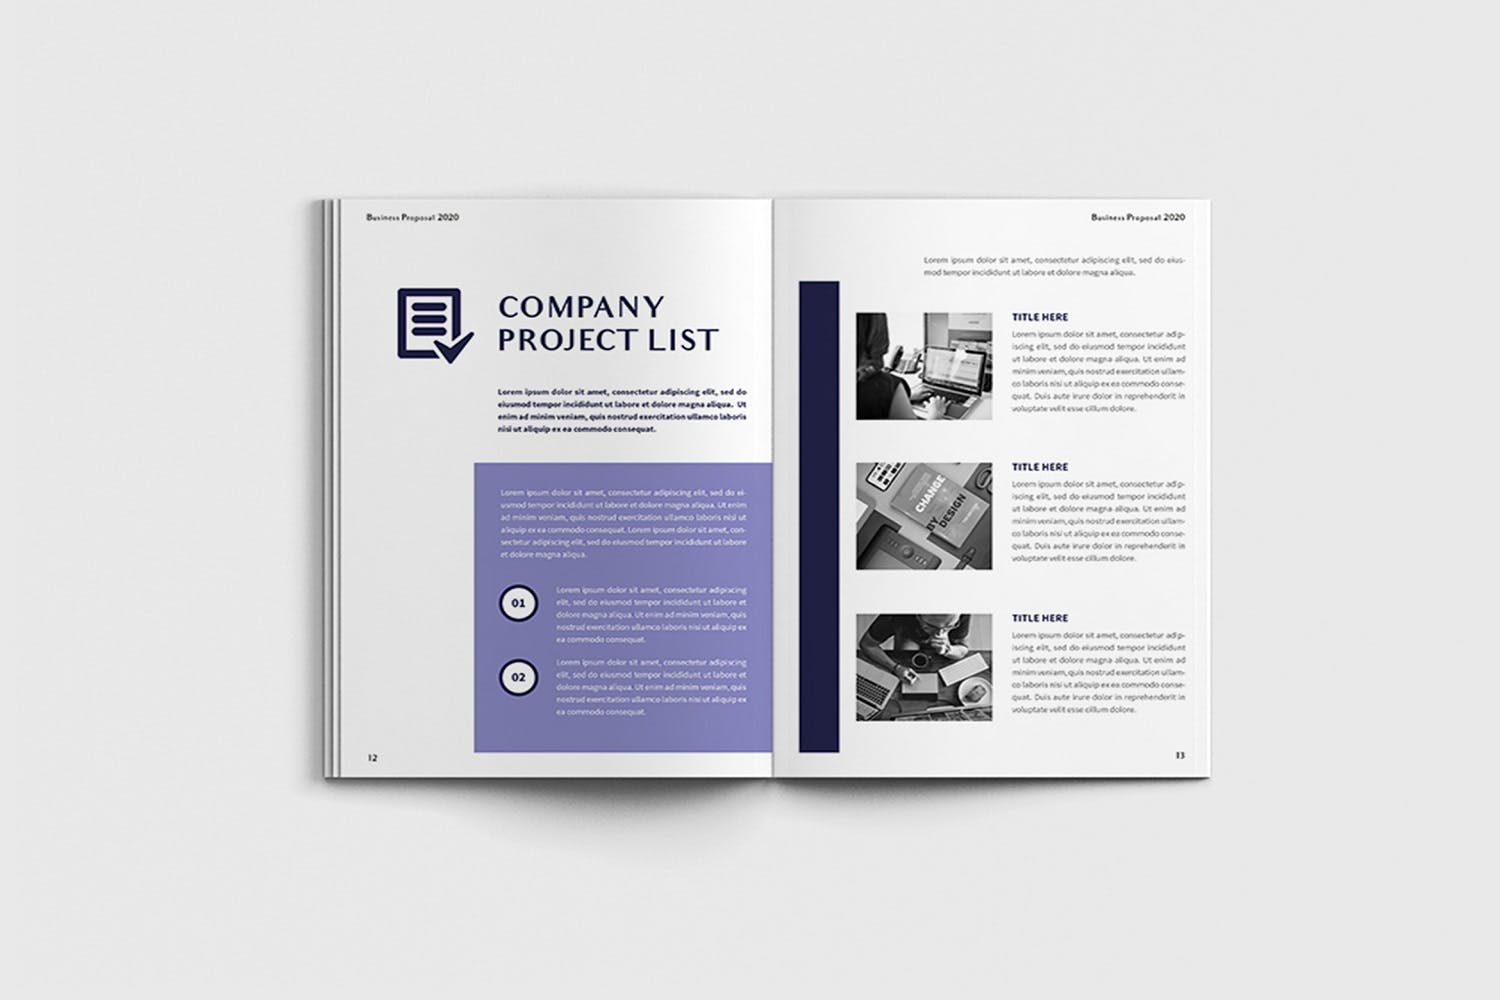 项目规划设计方案/项目解决方案画册设计模板 Exposina – A4 Business Brochure Template插图(6)